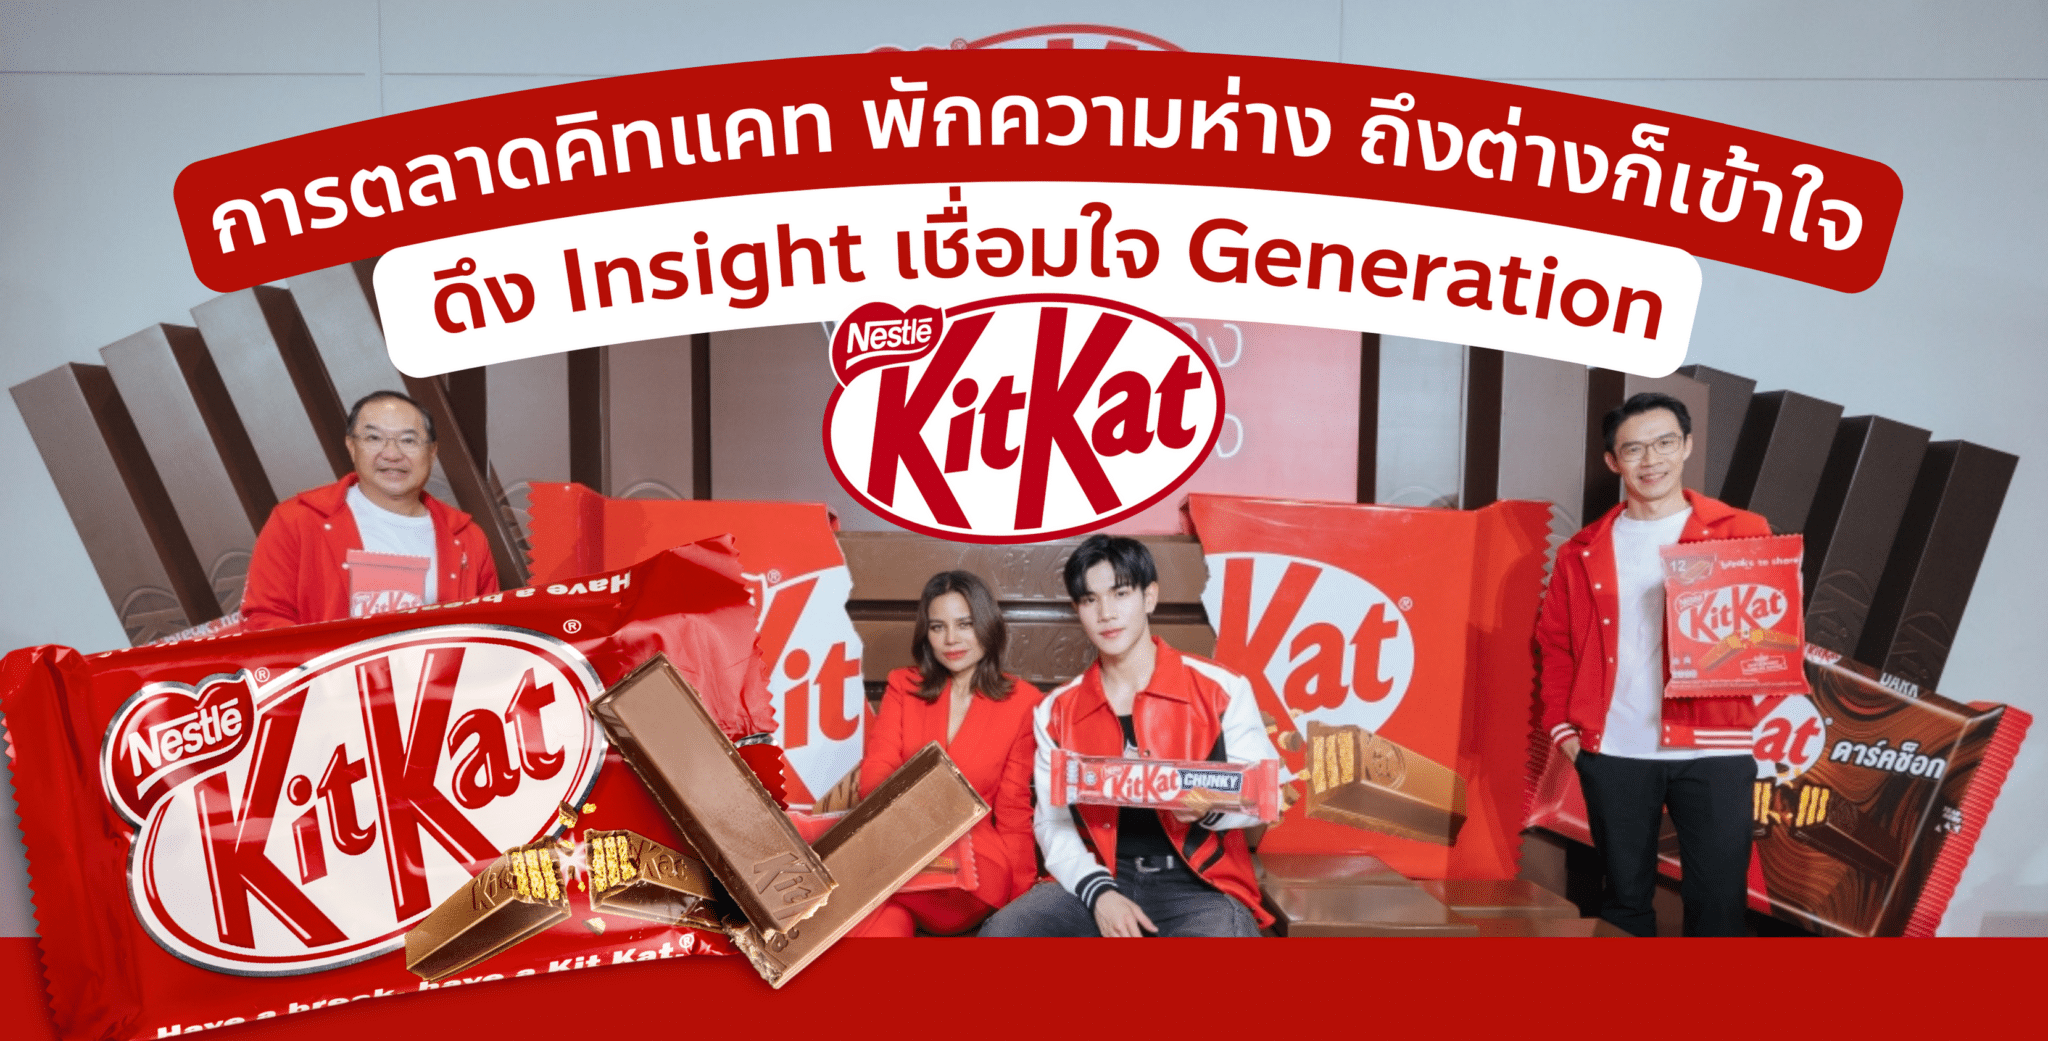 การตลาด KitKat พักความห่าง ถึงต่างก็เข้าใจ ดึง Insight เชื่อมใจ Generation